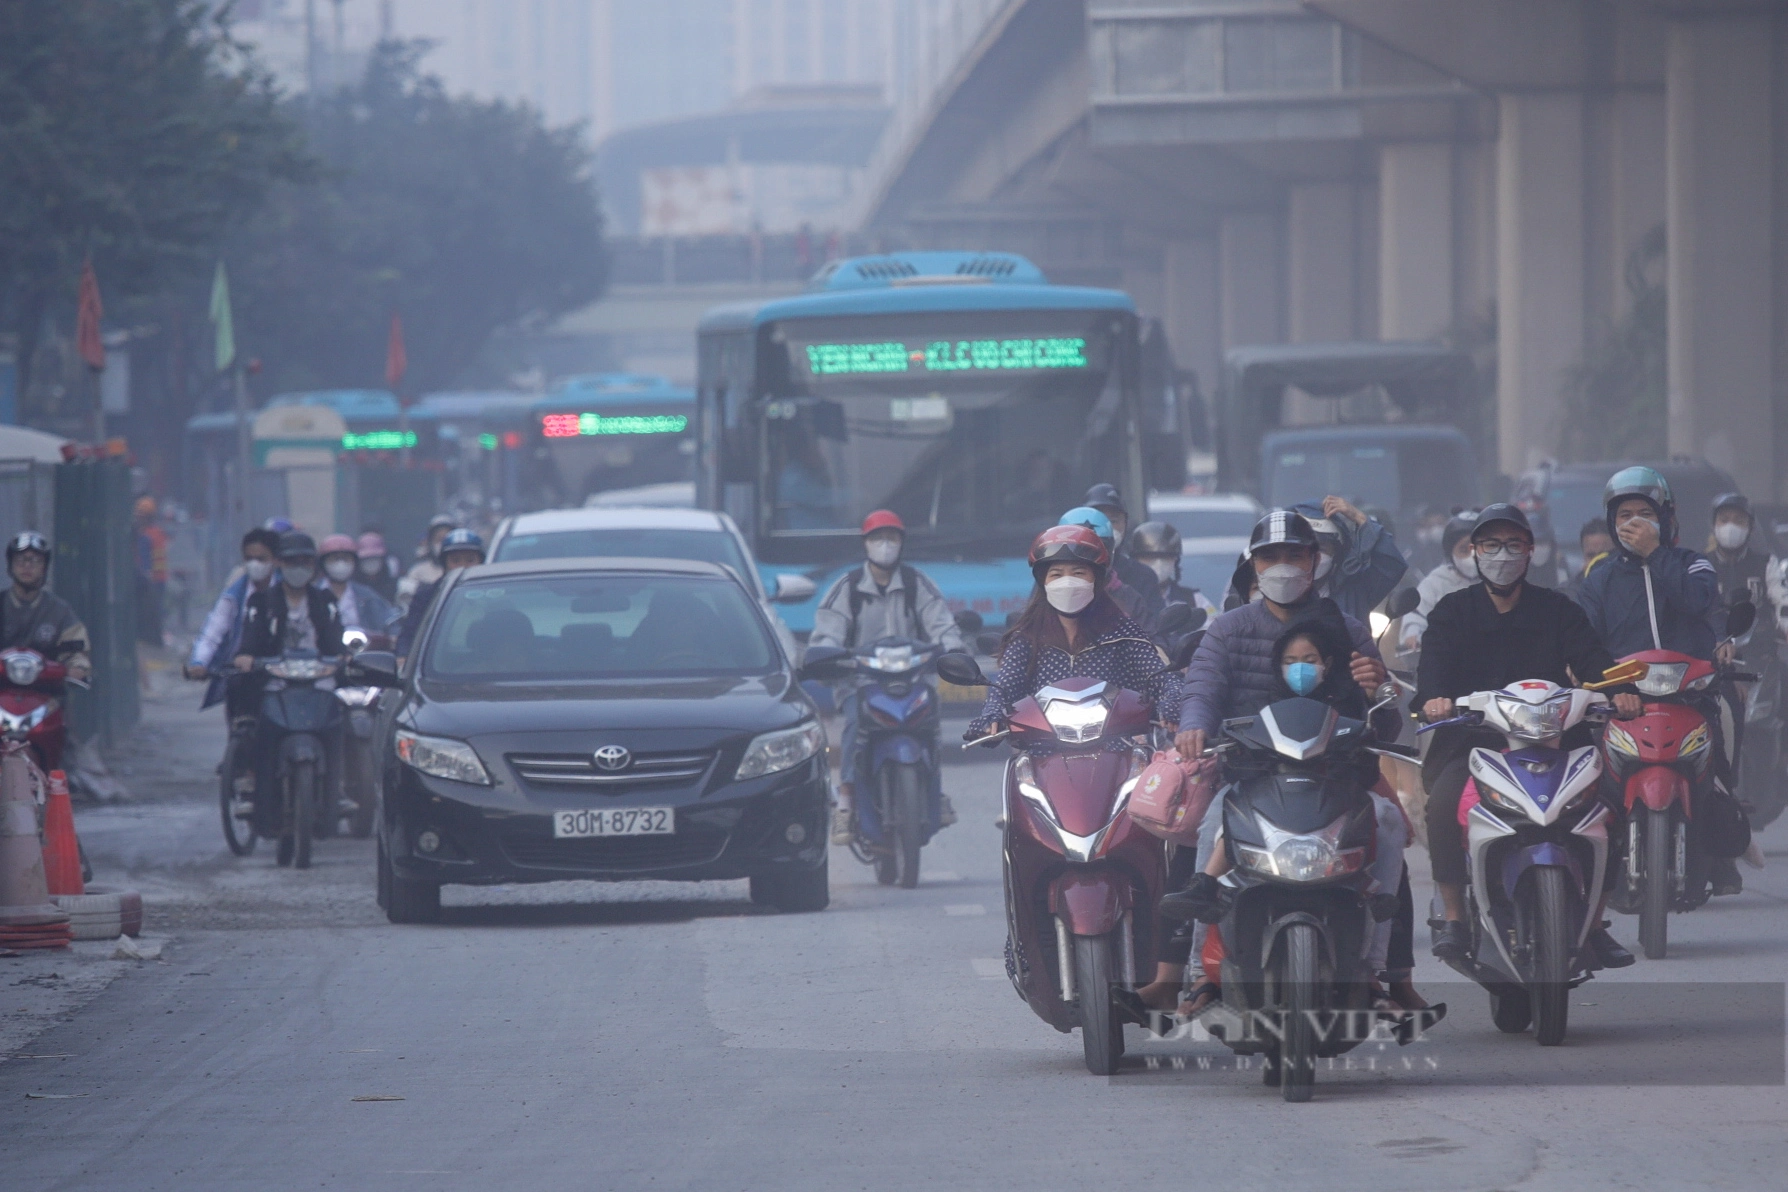 Bụi bay mịt mù, người dân chật vật đi qua nút giao thông 4 tầng ở Hà Nội - Ảnh 5.